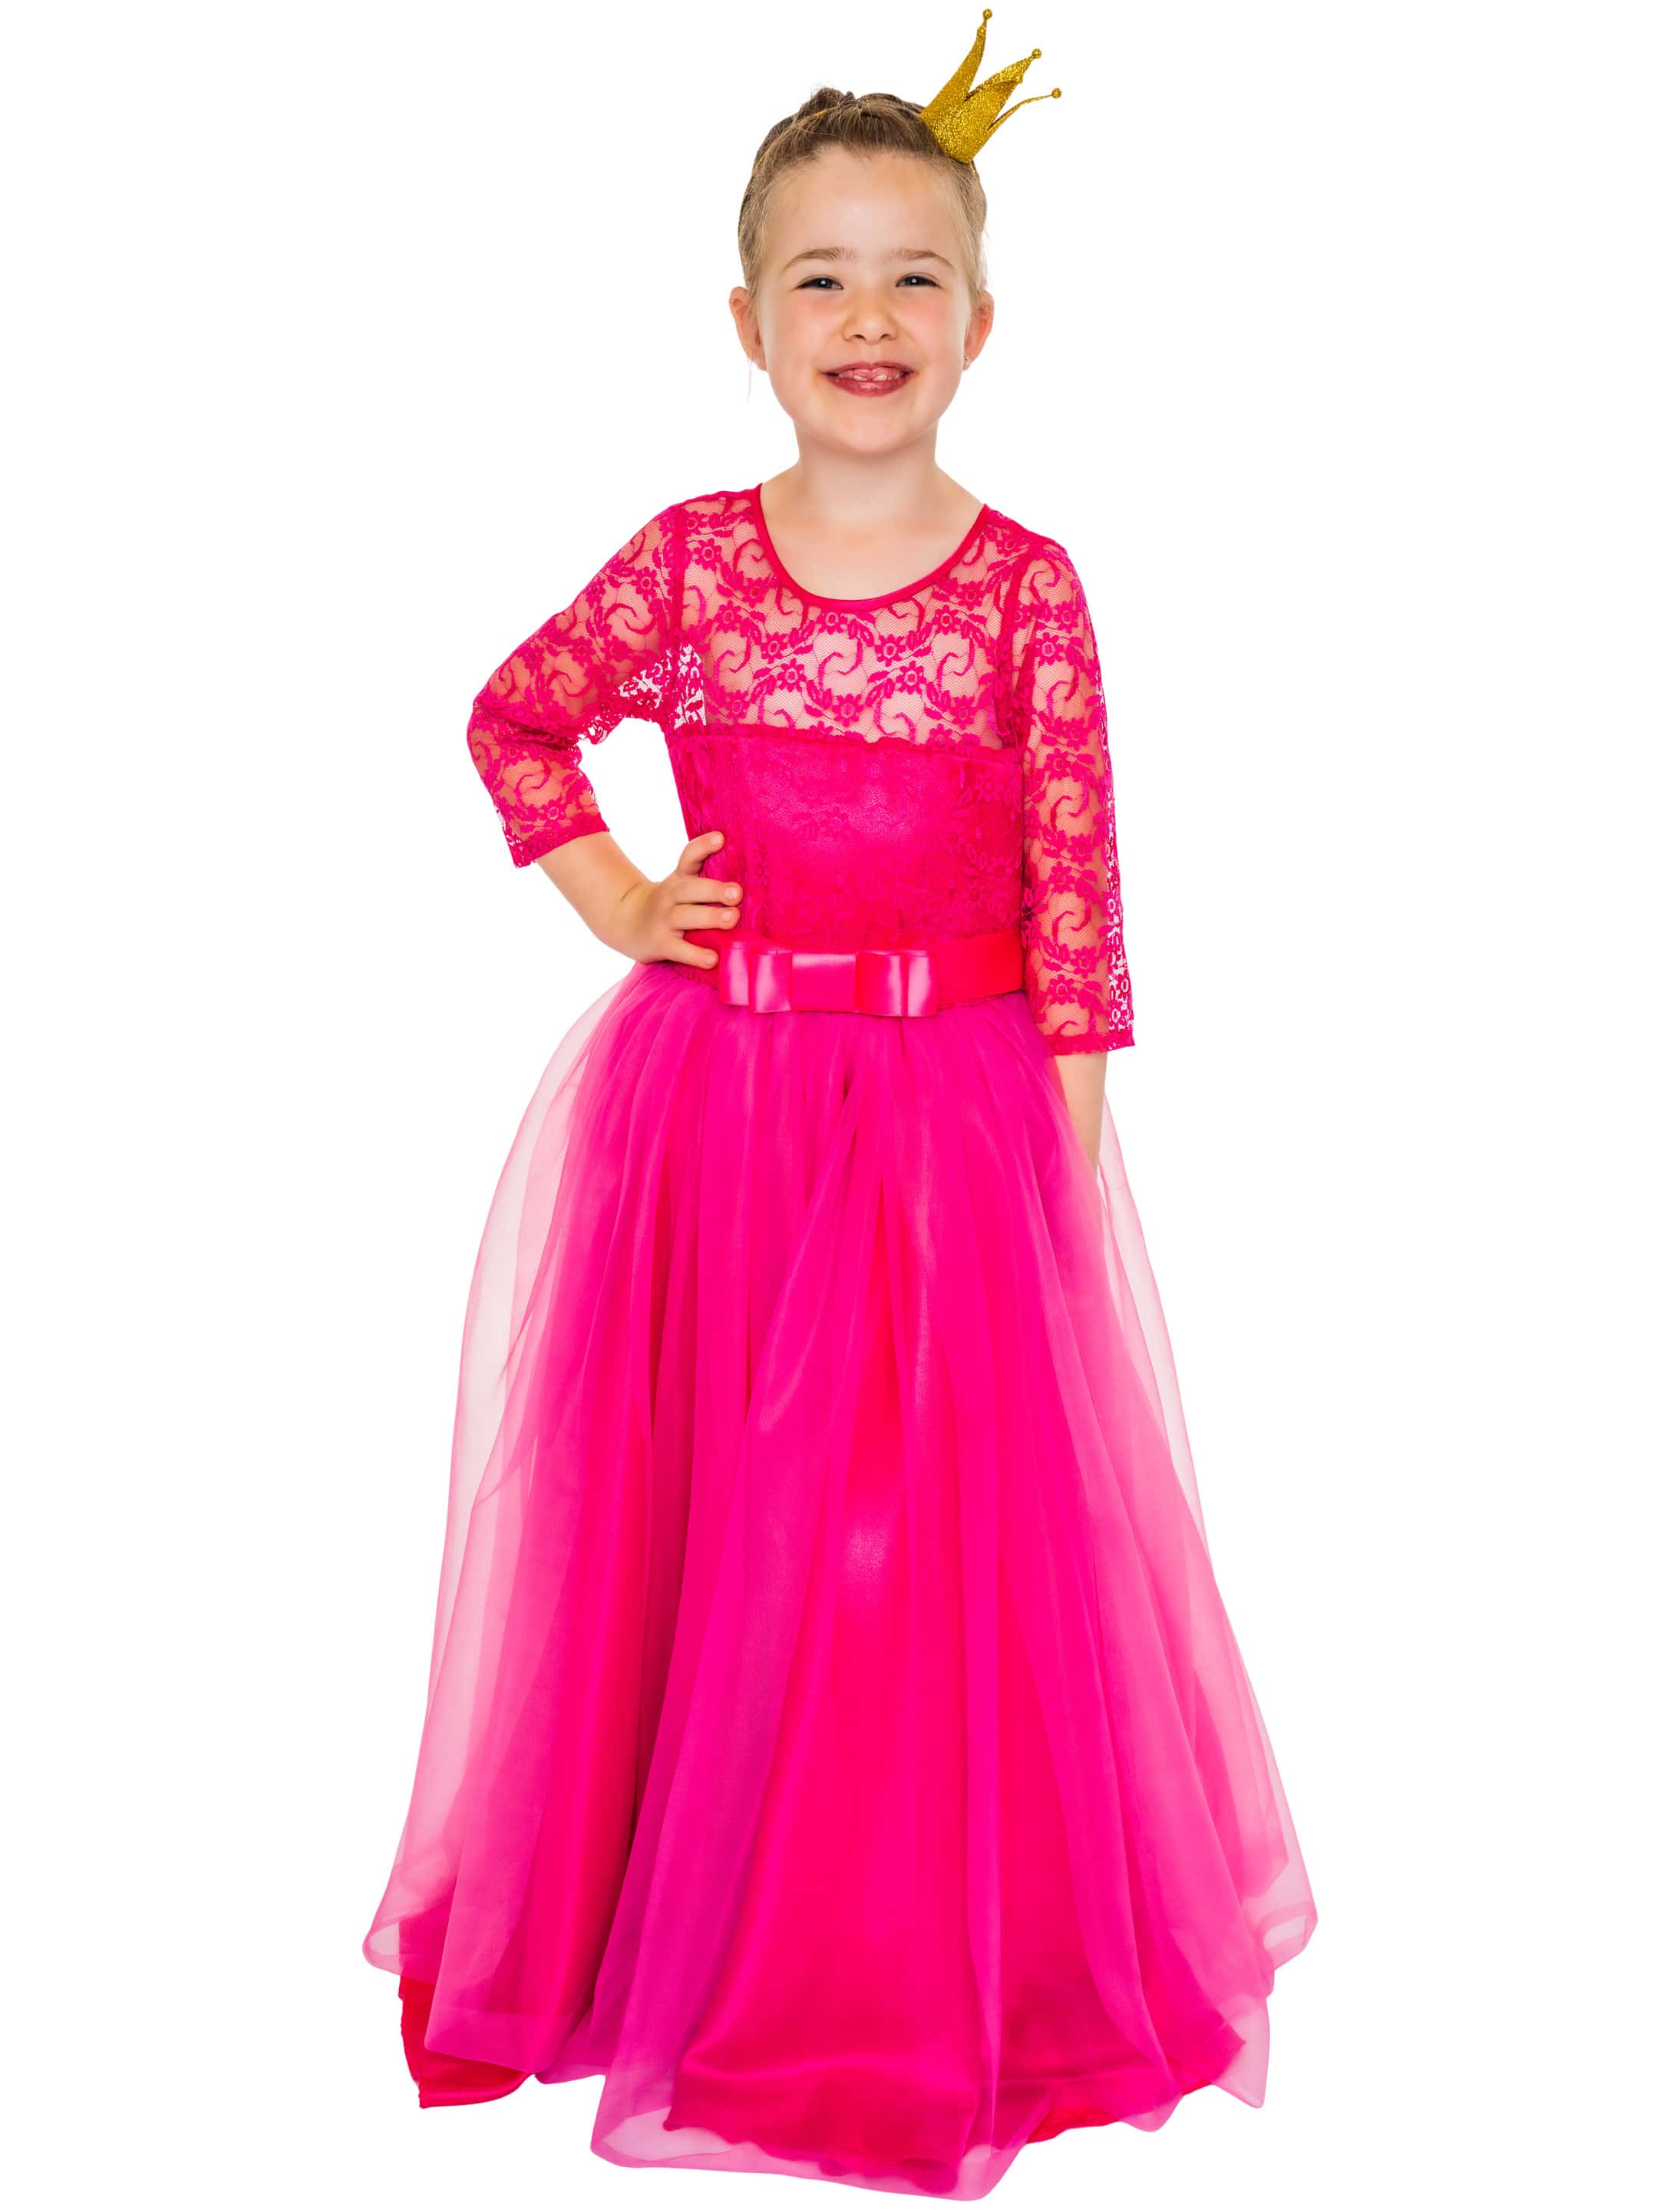 Kleid mit Spitze und Tüll 0019870-005-089 pink Kinder 104 